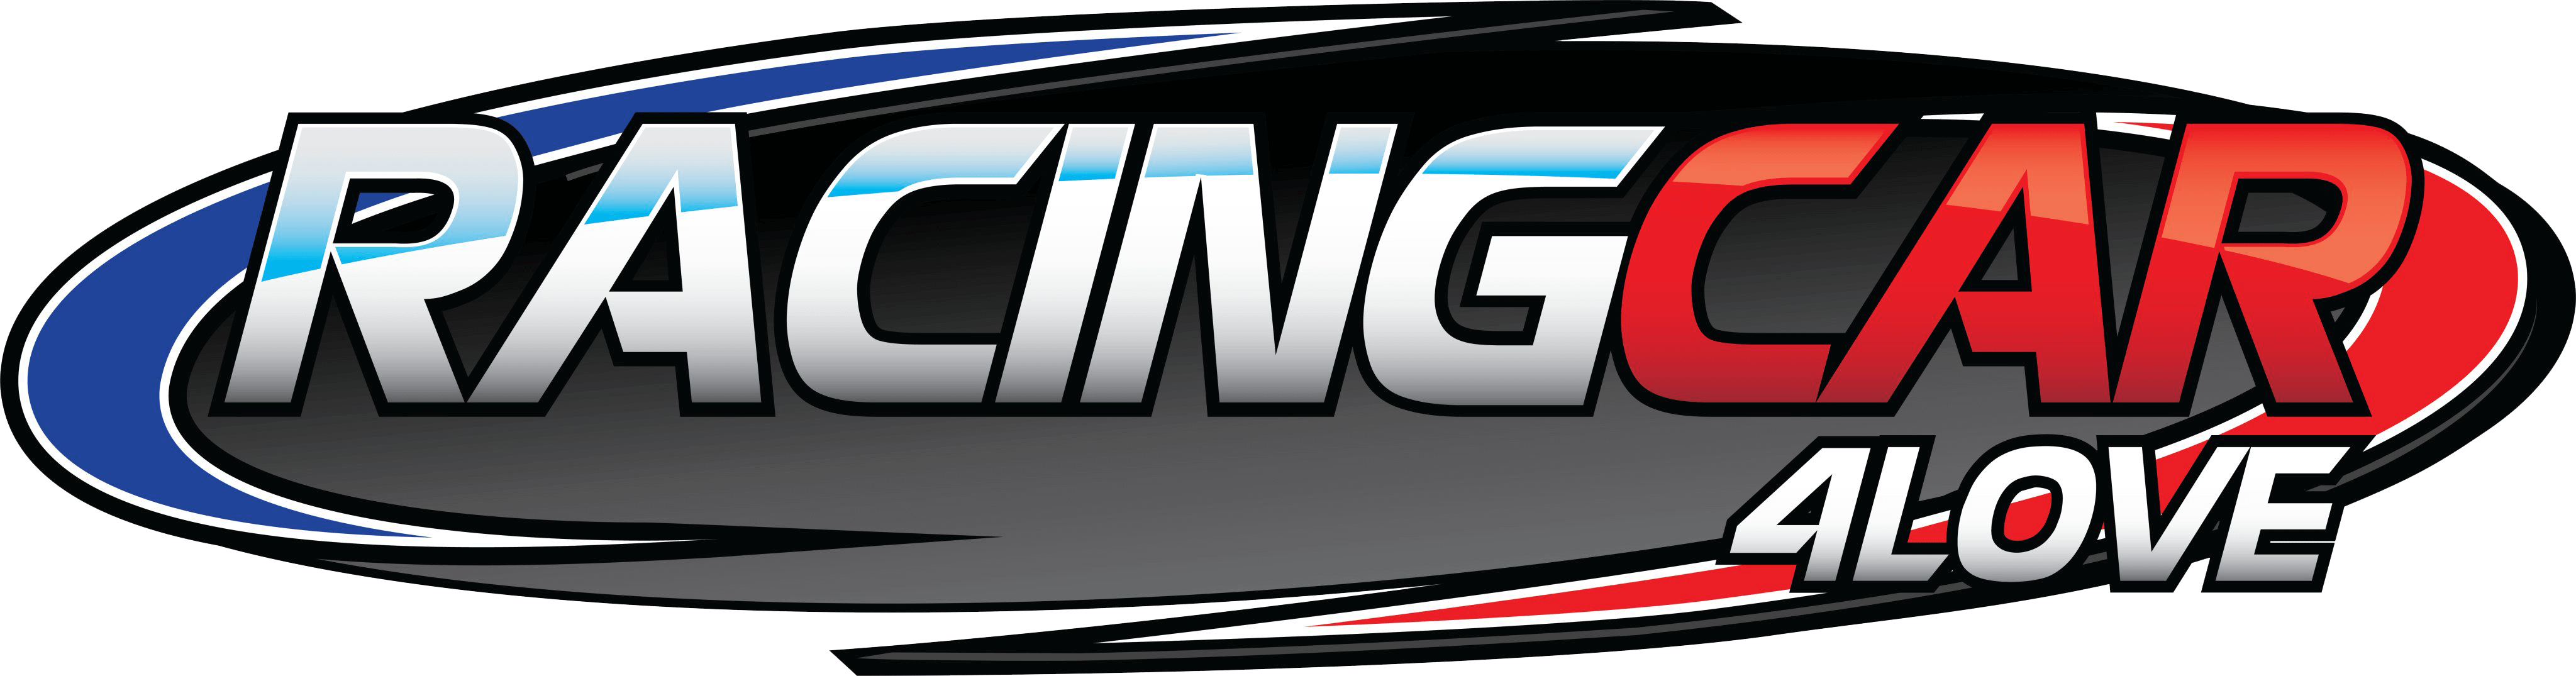 Racingcar4love.com